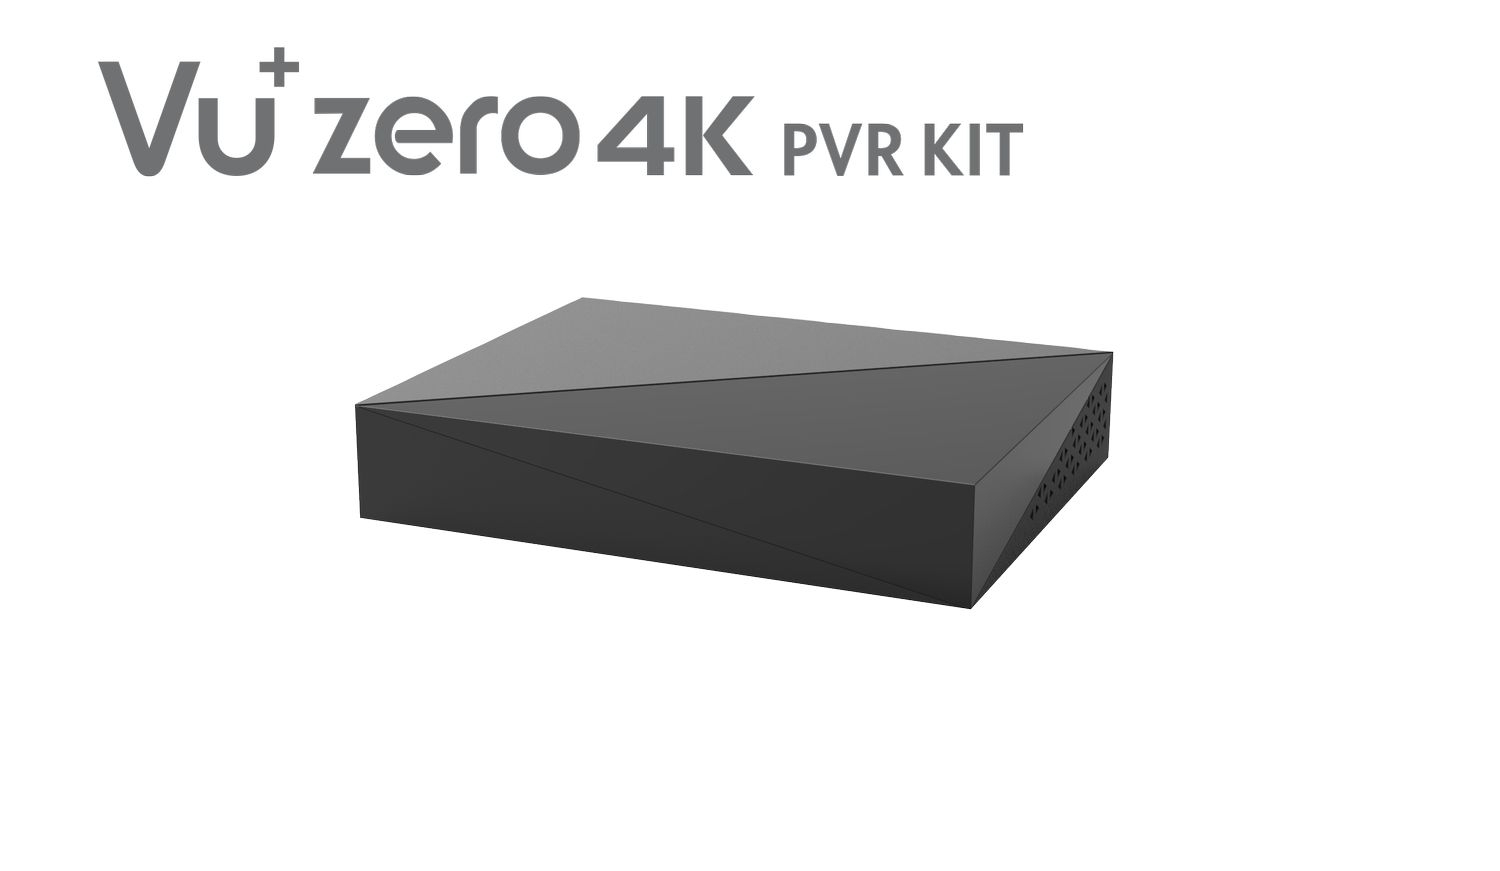 VU+Zero 4K PVR Kit incl. 1TB HDD